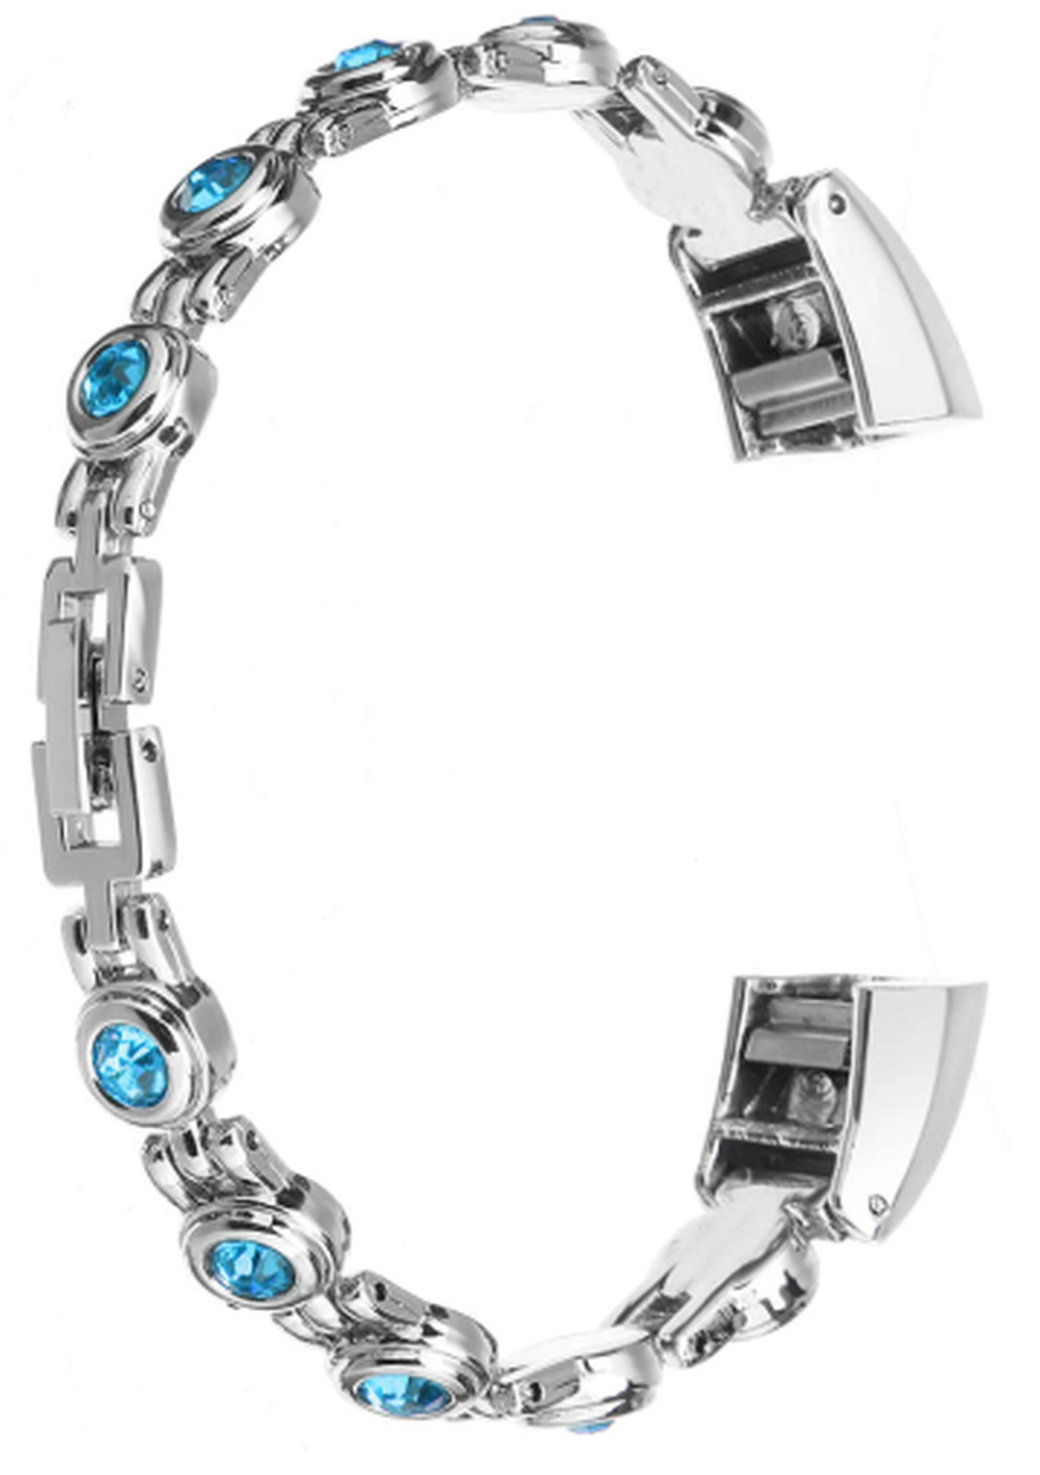 Ремешок для браслета Bakeey для Fitbit Alta/Fitbit HR, нержавеющая сталь, серебро, синие кристаллы фото